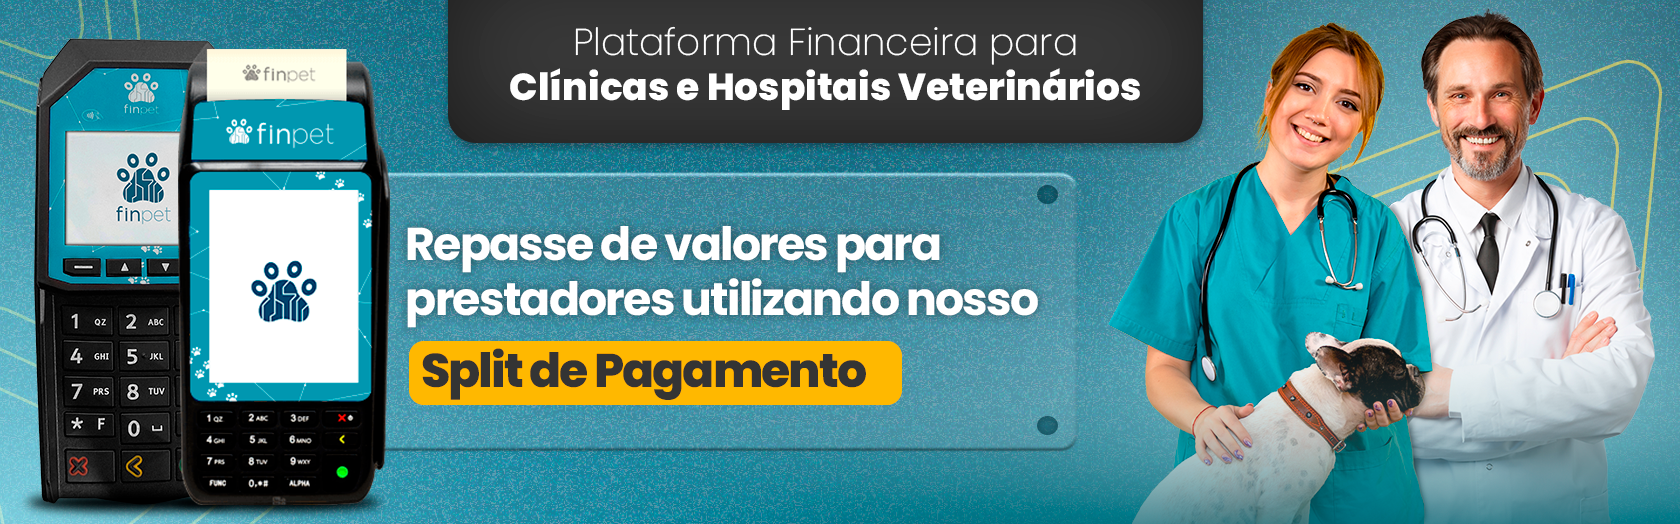 Plataforma Financeira para Clínicas e Hospitais Veterinários. Maquininha de Cartão com Split de Pagamento Integrado. Planos e Taxas personalizados